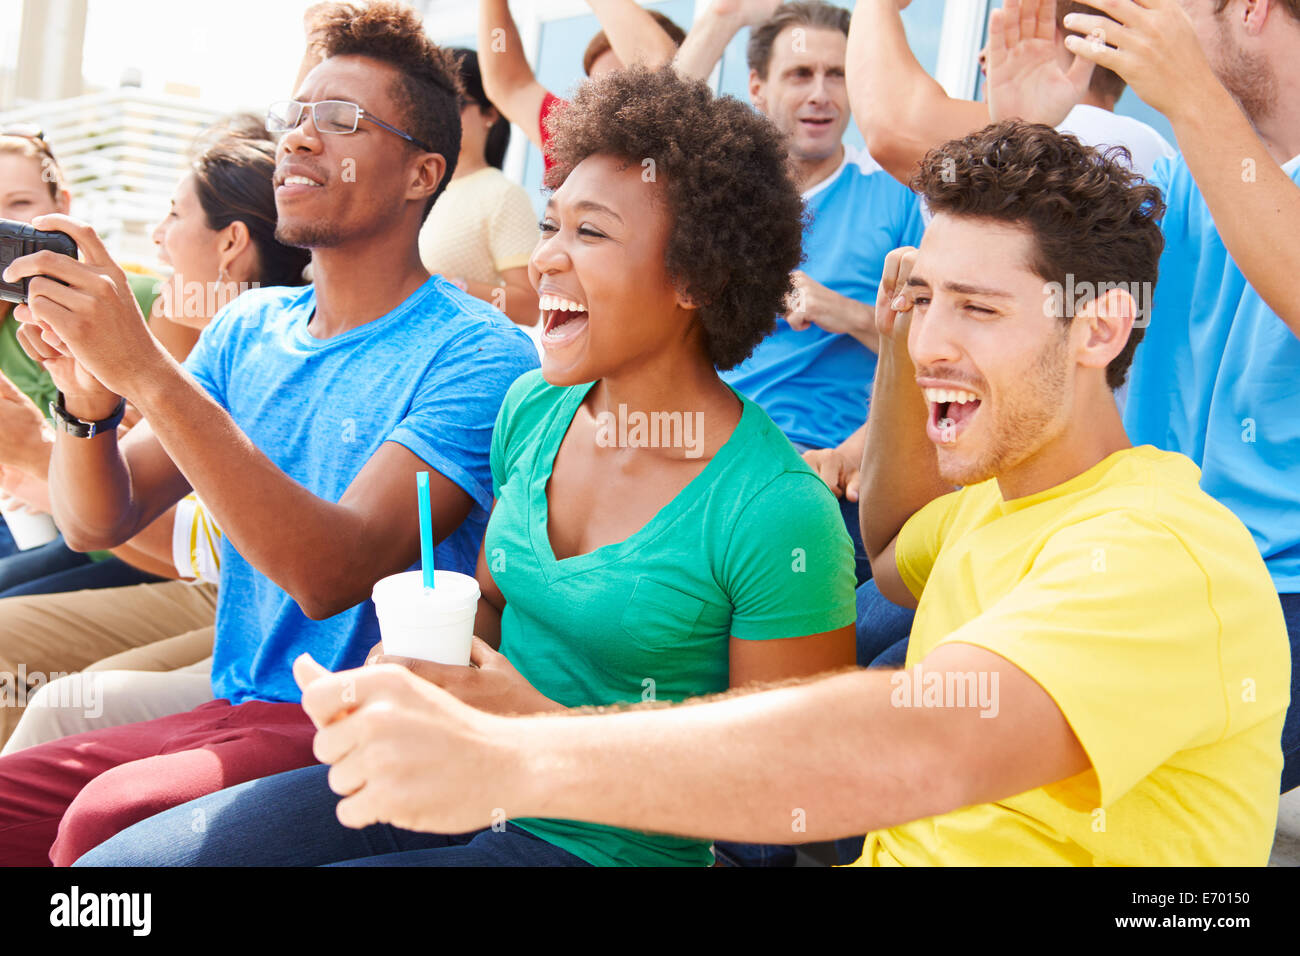 Zuschauer In Teamfarben gerade Sport-Event Stockfoto